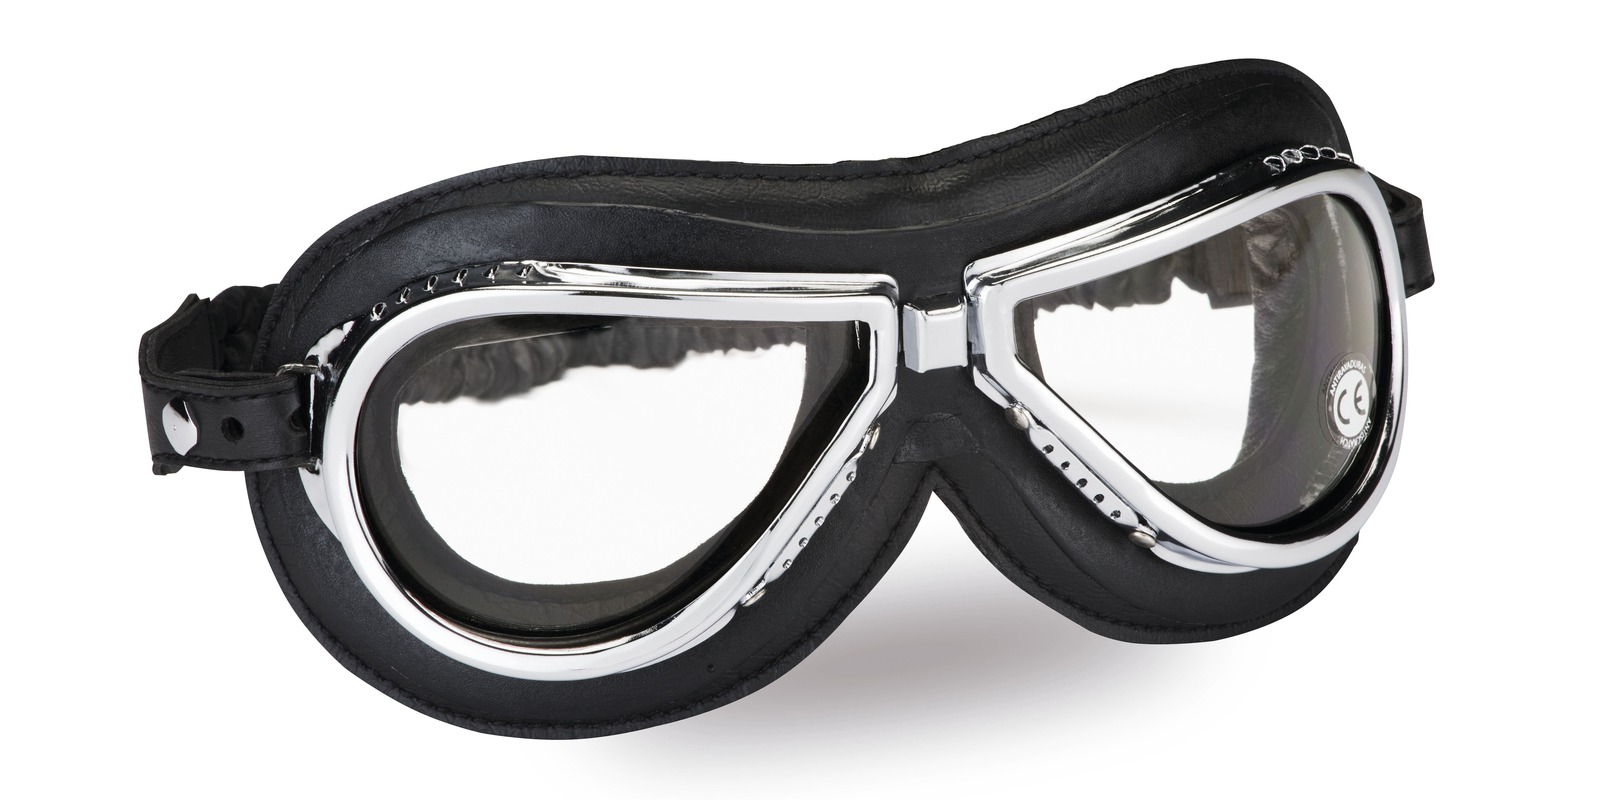 Obrázek produktu Vintage brýle 500, CLIMAX (čirá skla) 500